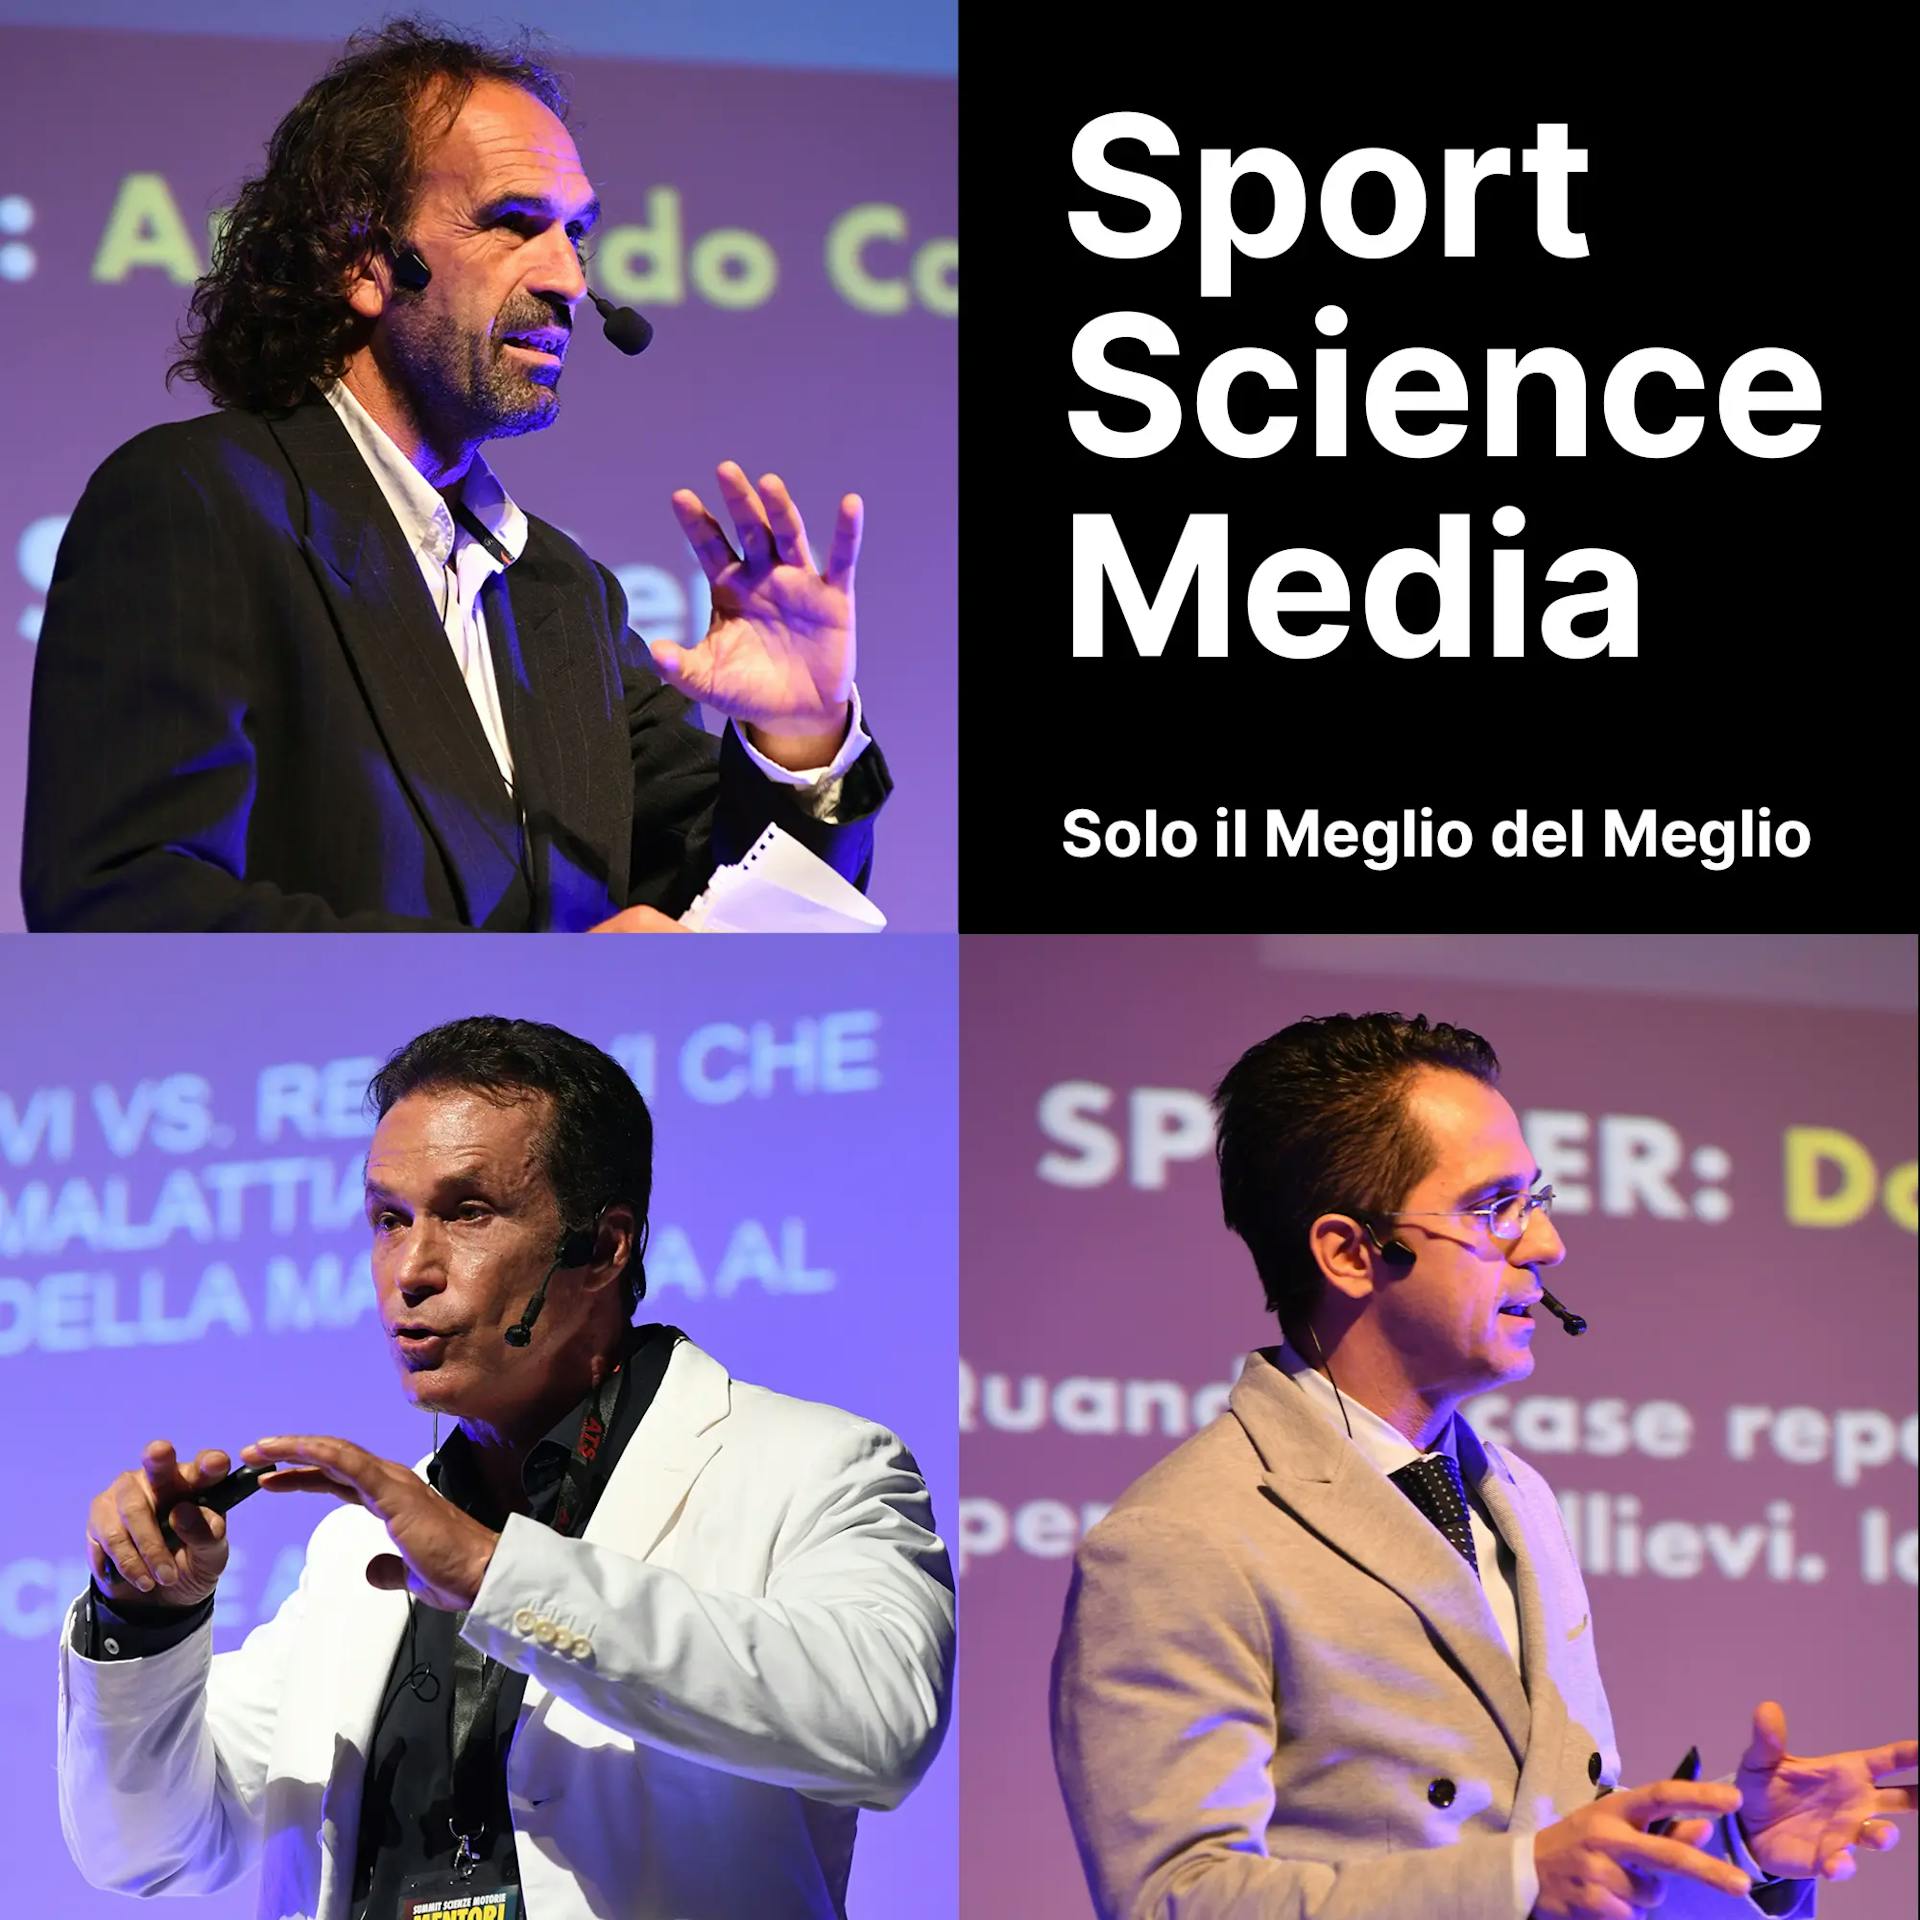 Sport Science Media solo il meglio del meglio